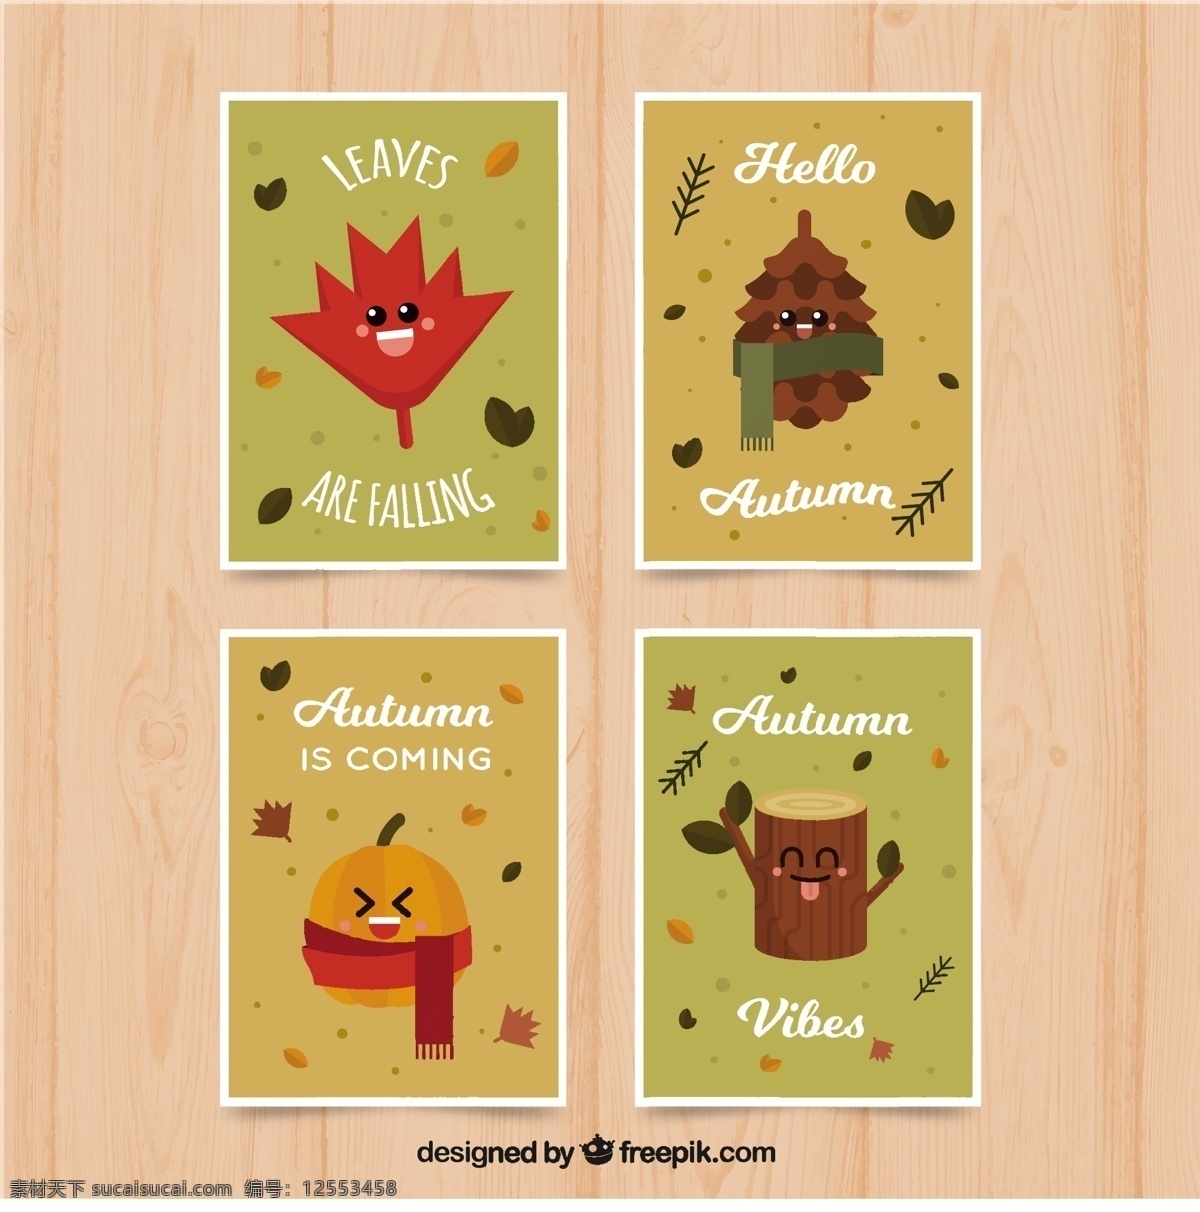 秋卡趣味多样 树 卡片 模板 树叶 自然 可爱 秋天 微笑 色彩丰富 平坦 现代 平面设计 娱乐 松树 印刷品